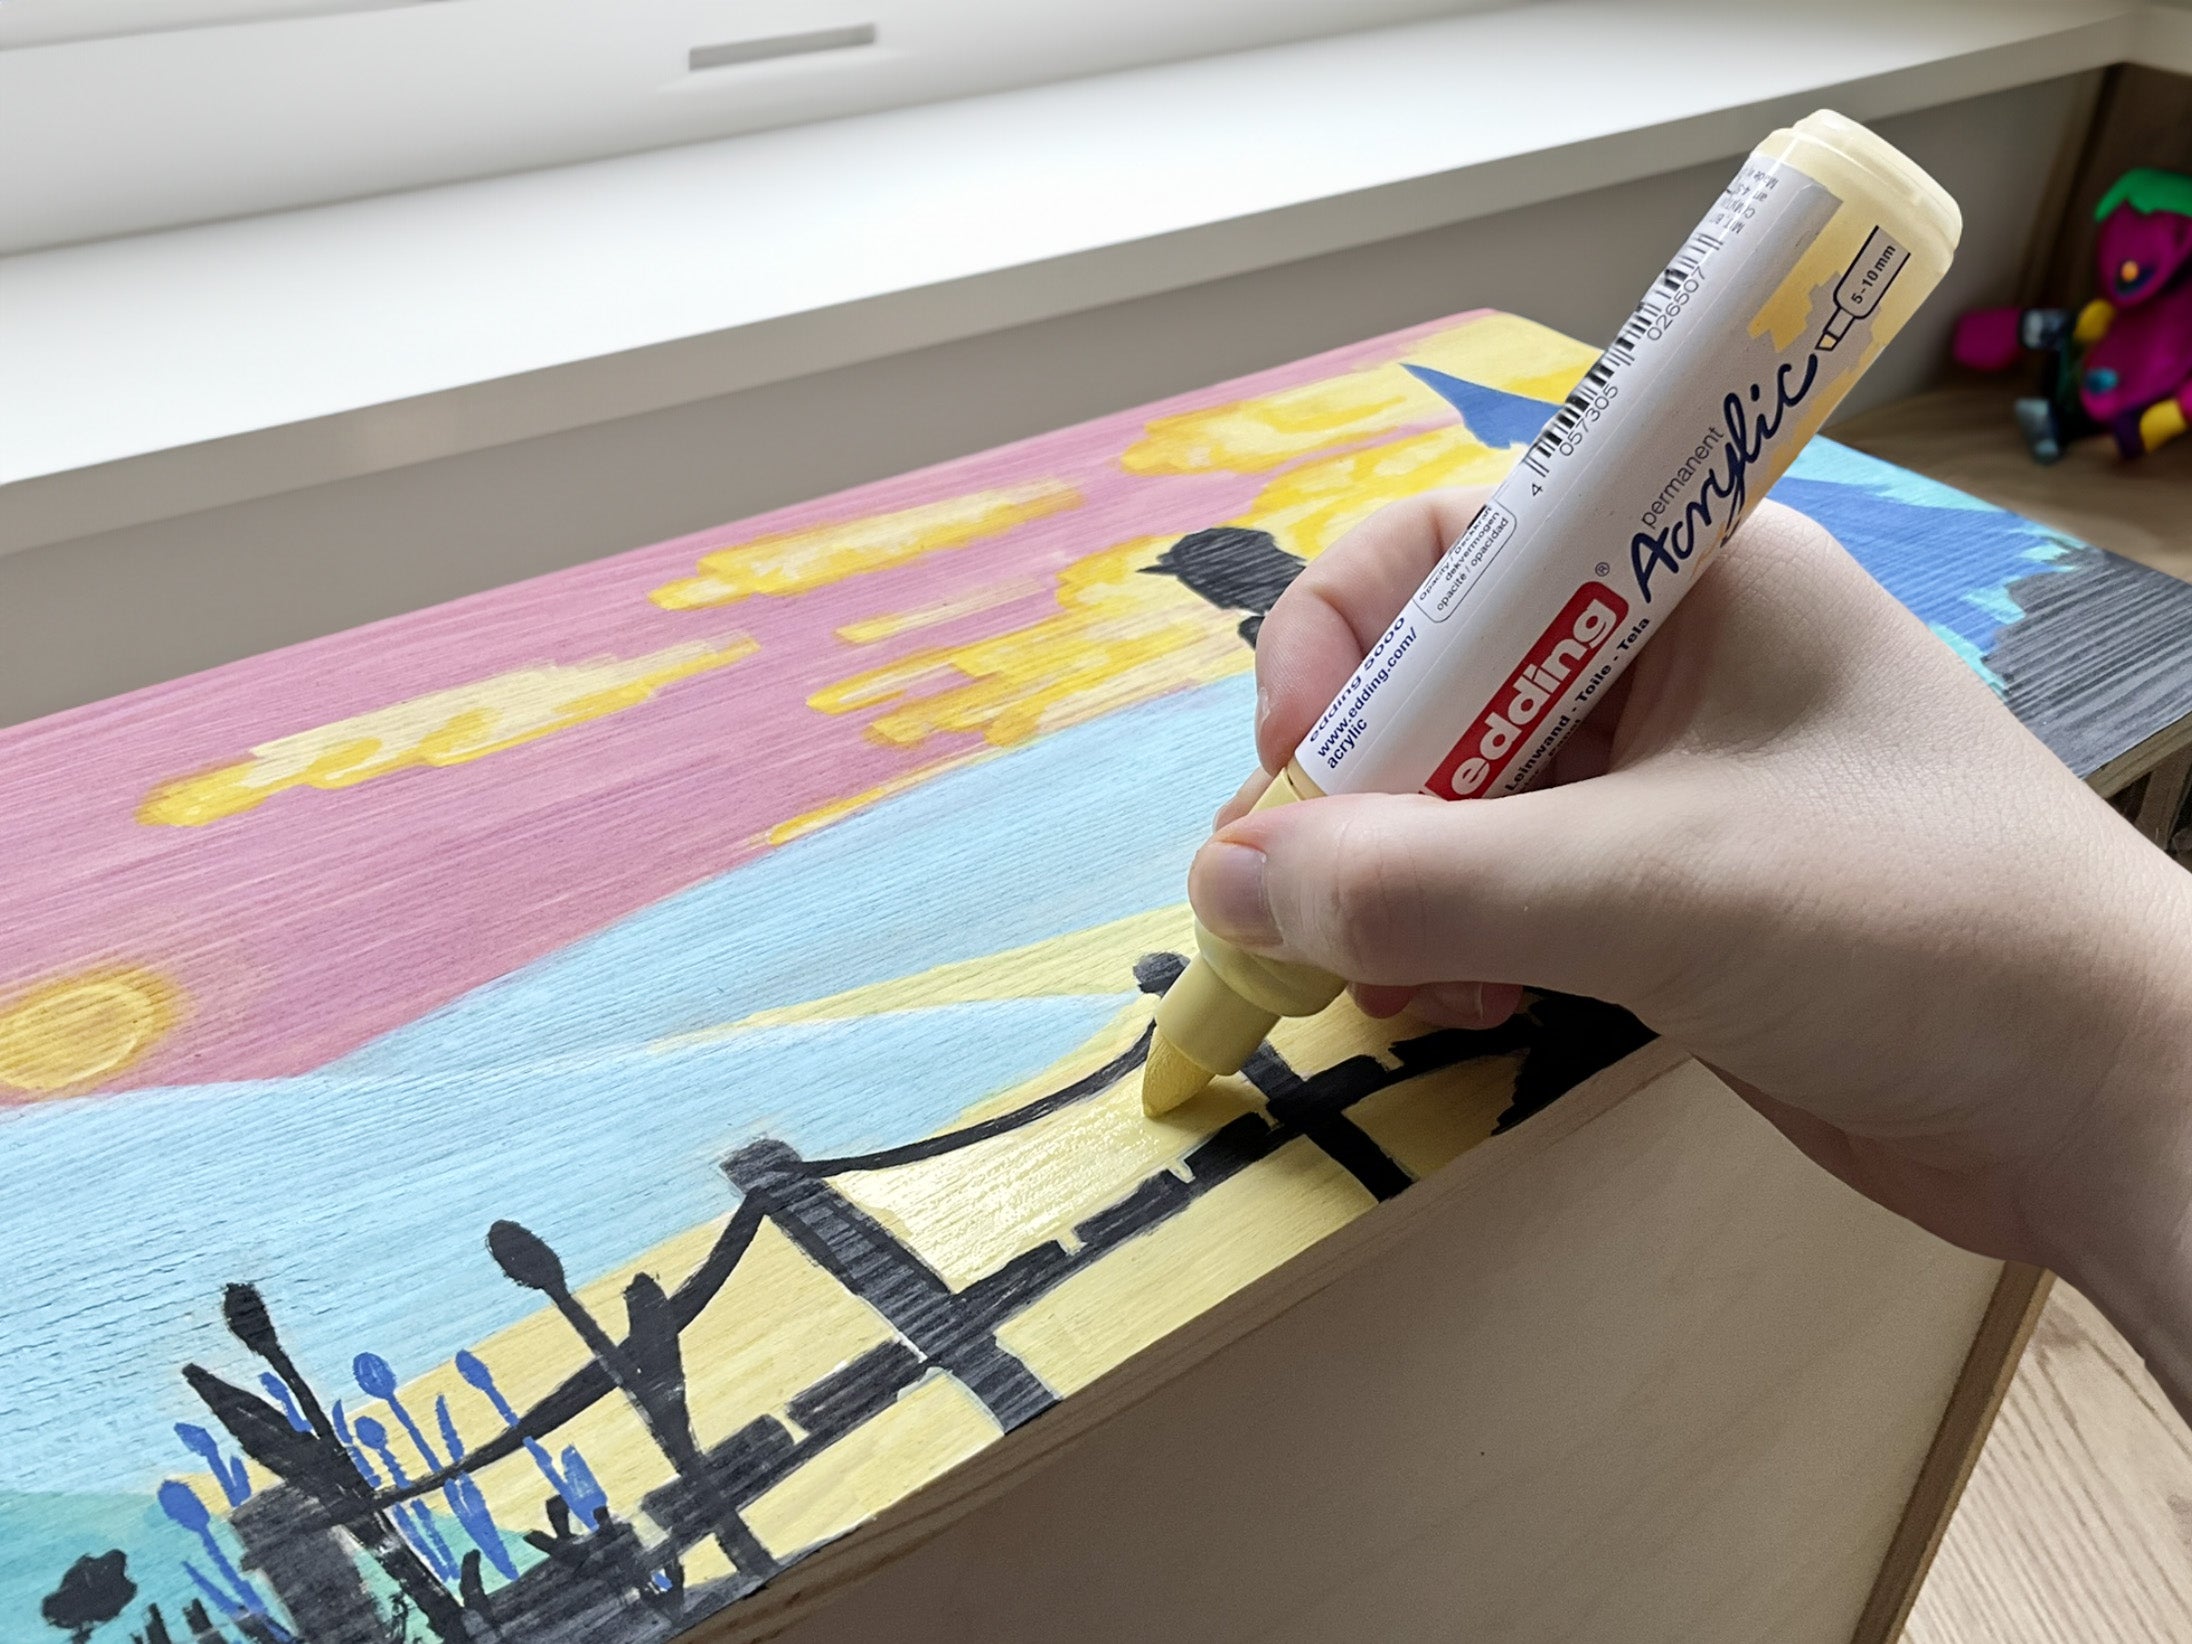 Die Hand eines Künstlers hält einen gelben edding 5000 Acrylmarker breit und fügt Details zu einem farbenfrohen Leinwandgemälde hinzu.